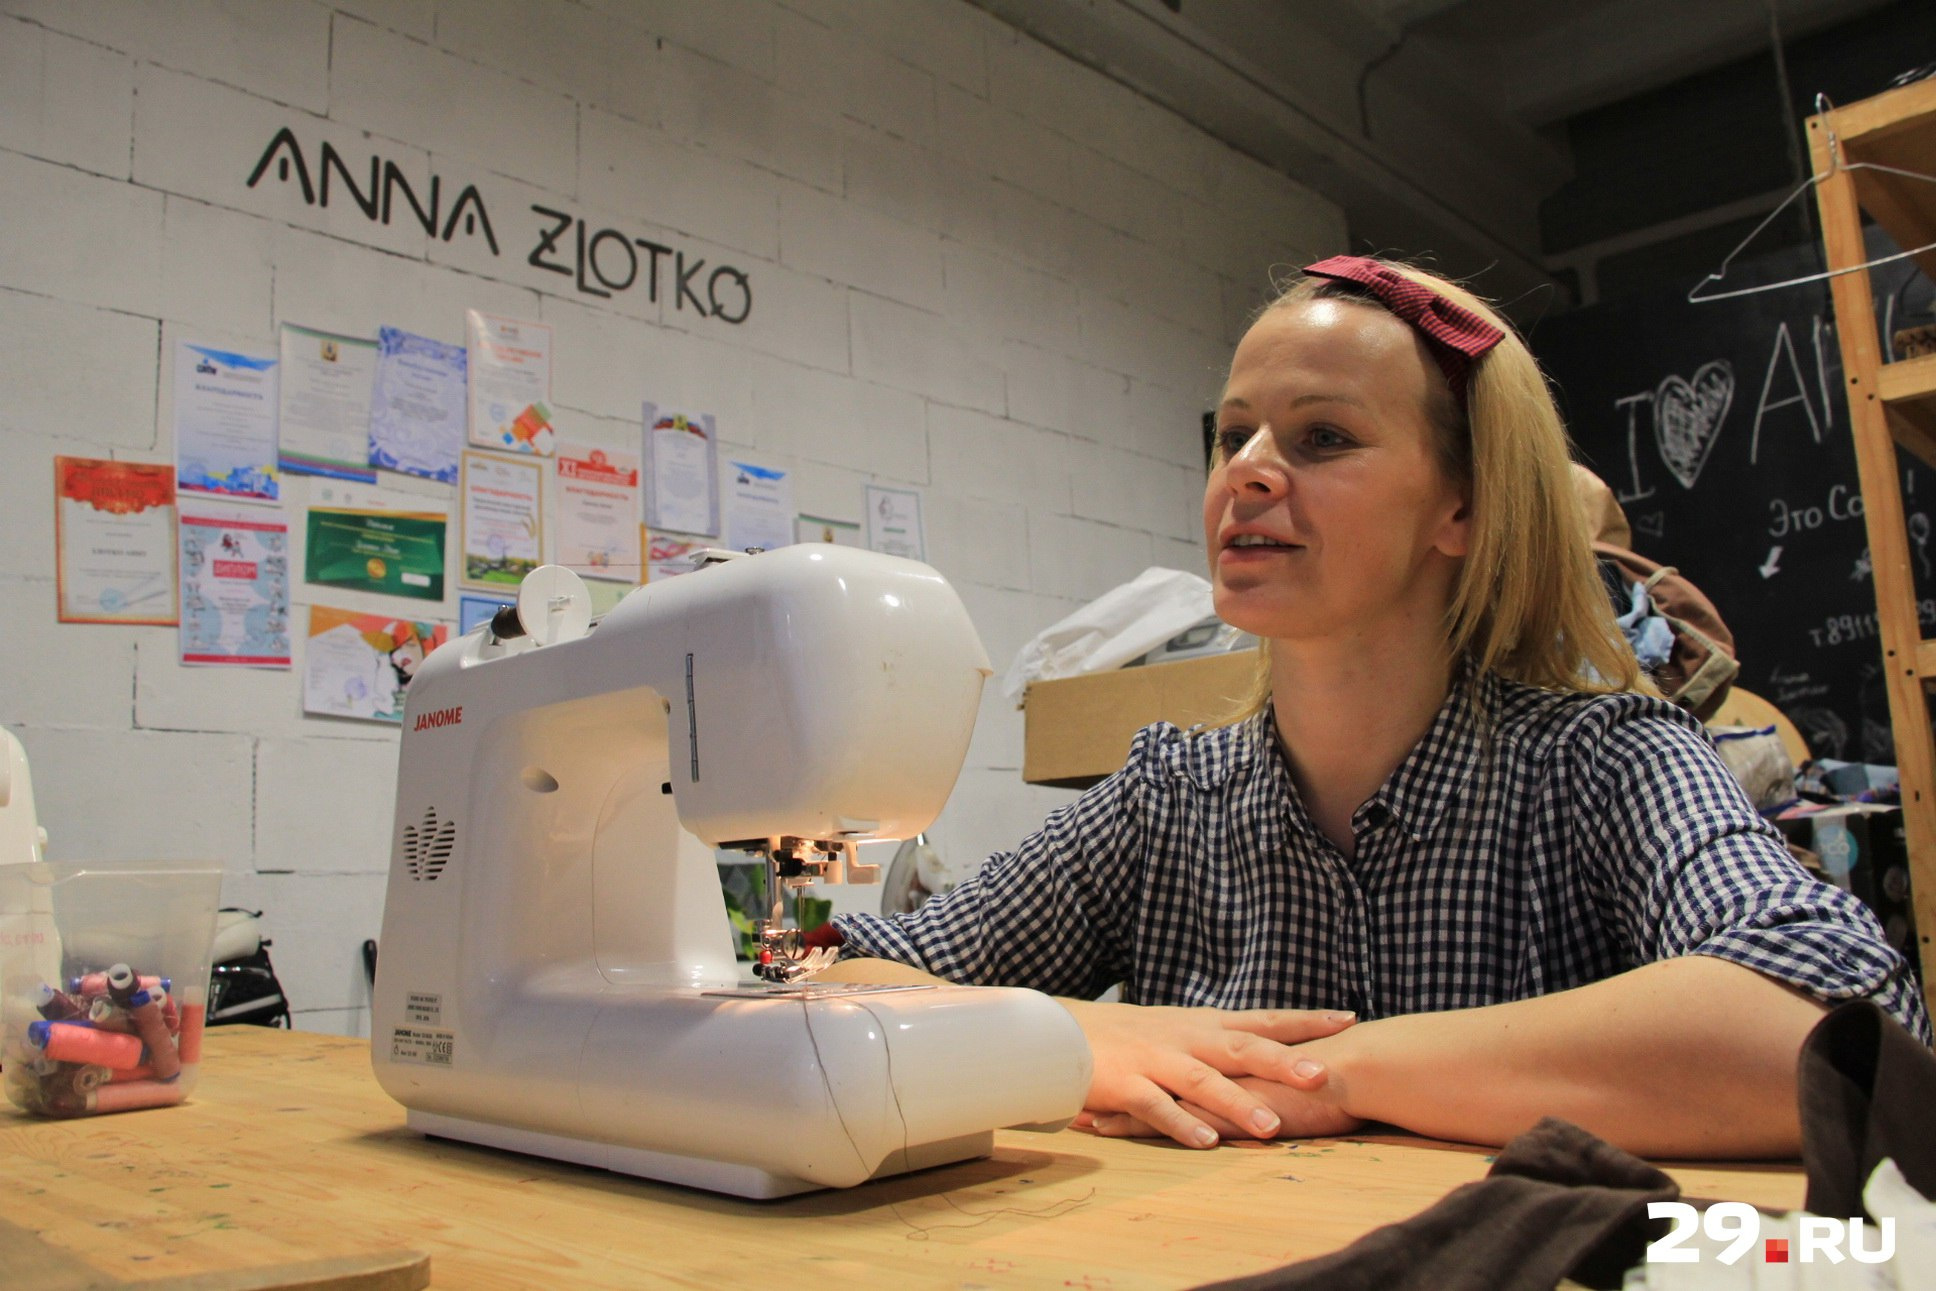 Анна Злотко: «Я всегда любила шить, и однажды решила, что это может стать делом моей жизни»